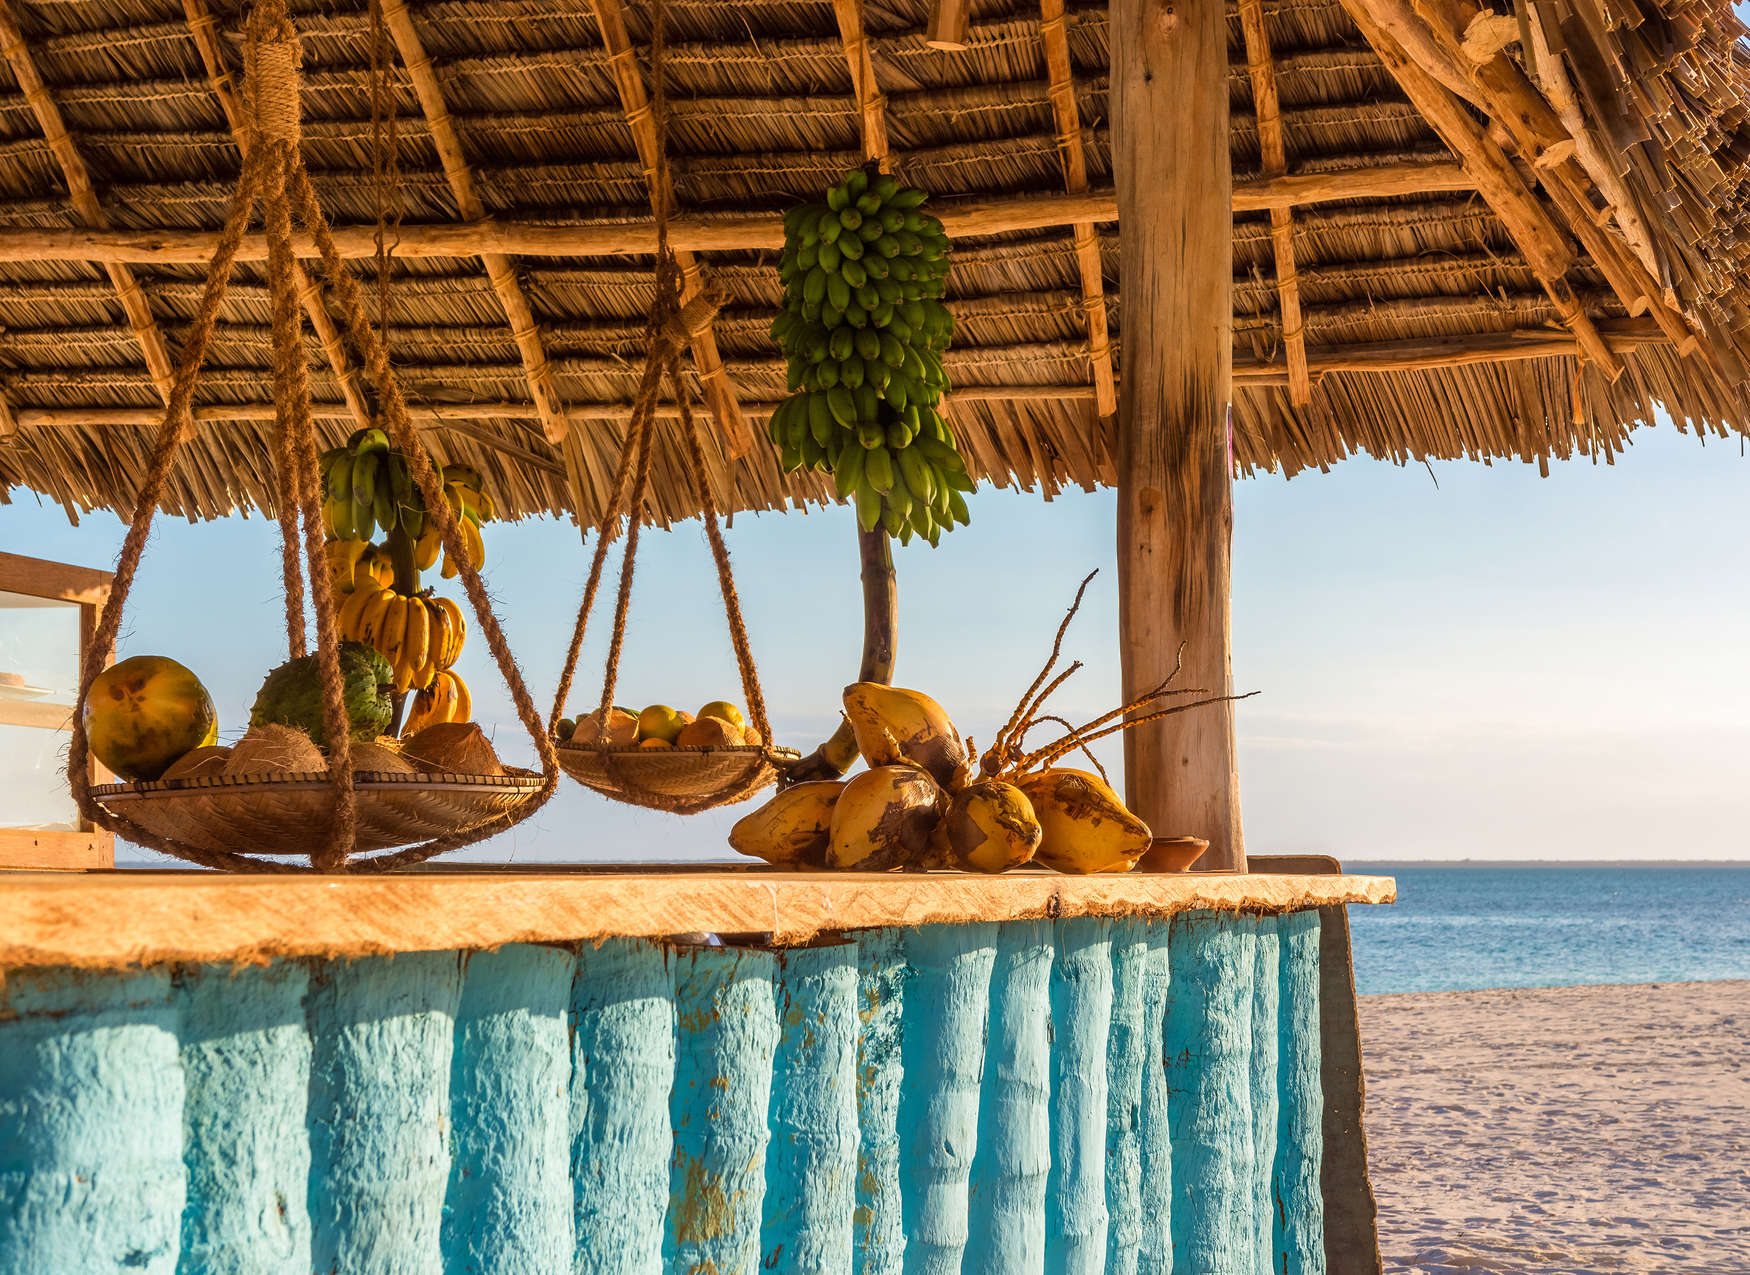             Bar de plage avec vue sur la mer - Marron, bleu, vert
        